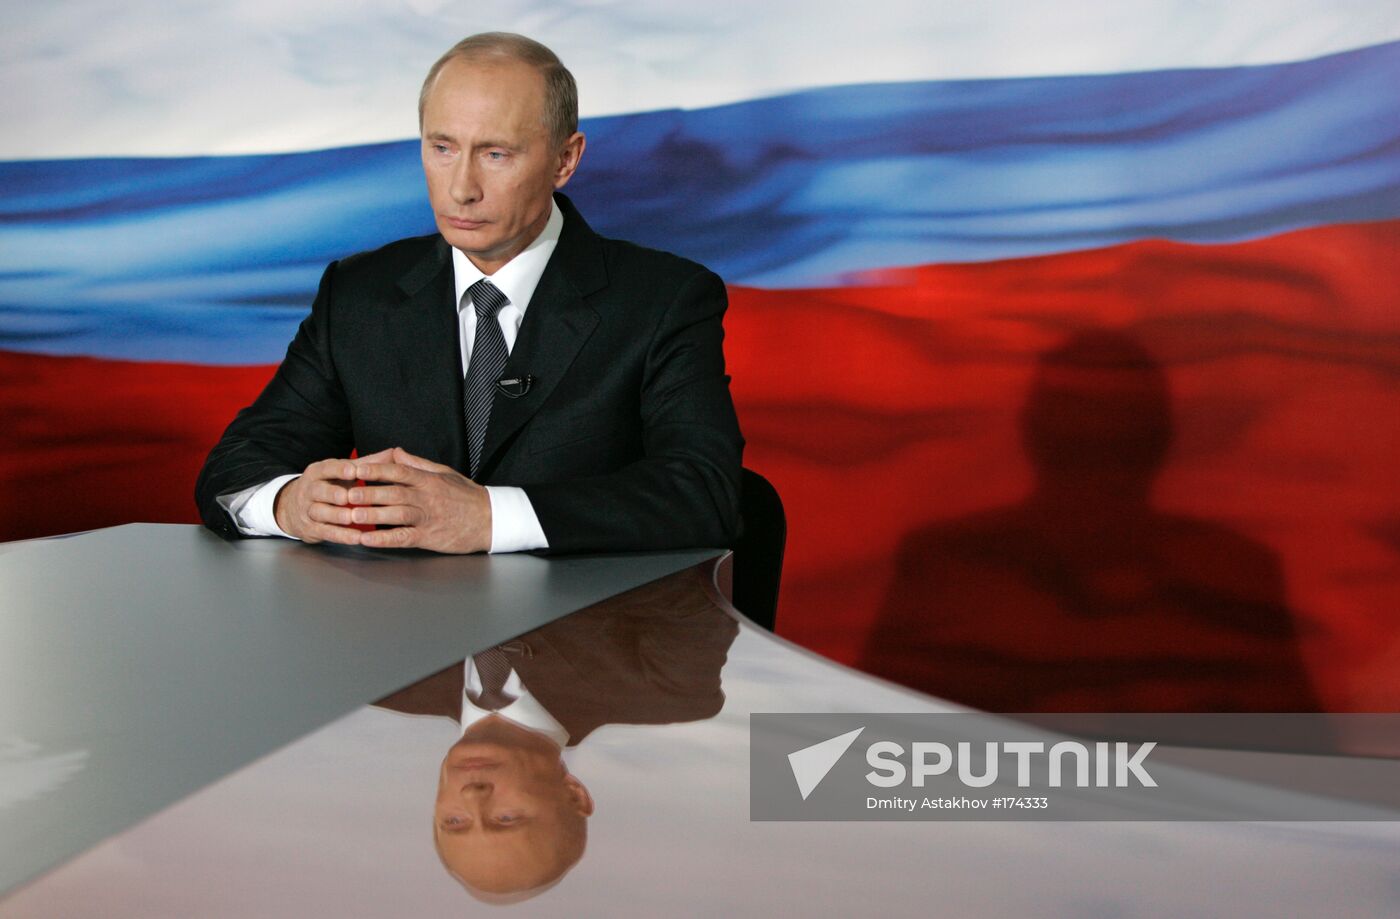 Vladimir Putin televised address